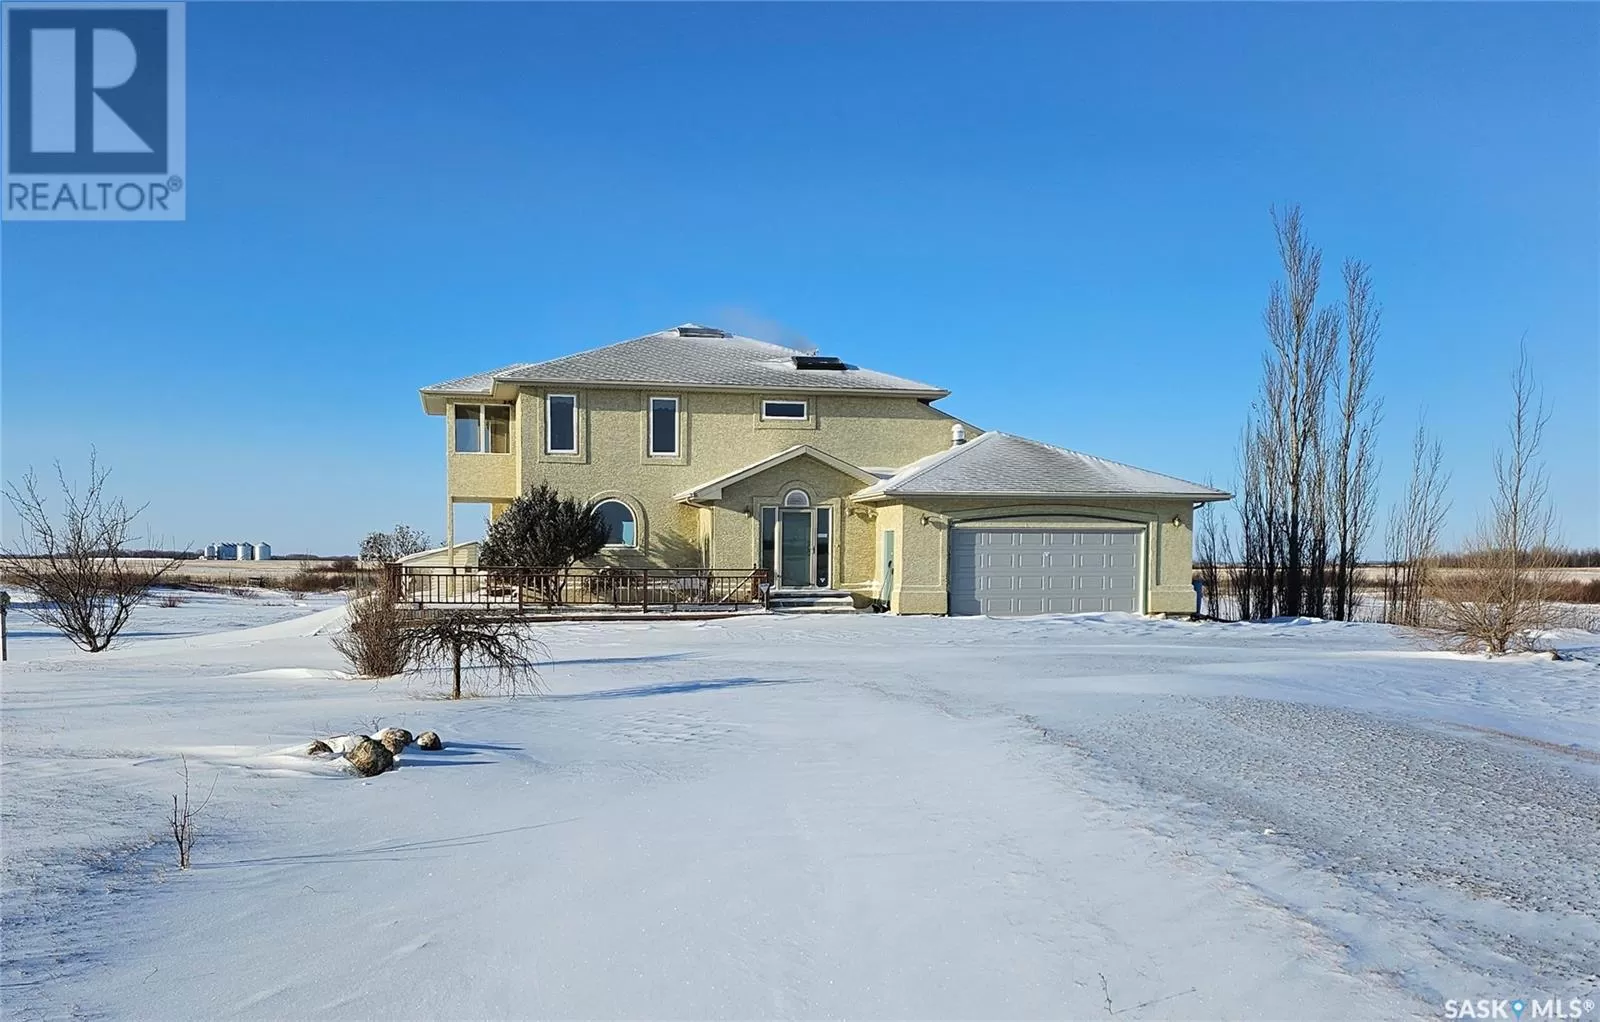 House for rent: Chen Acreage, Corman Park Rm No. 344, Saskatchewan S7K 3J5